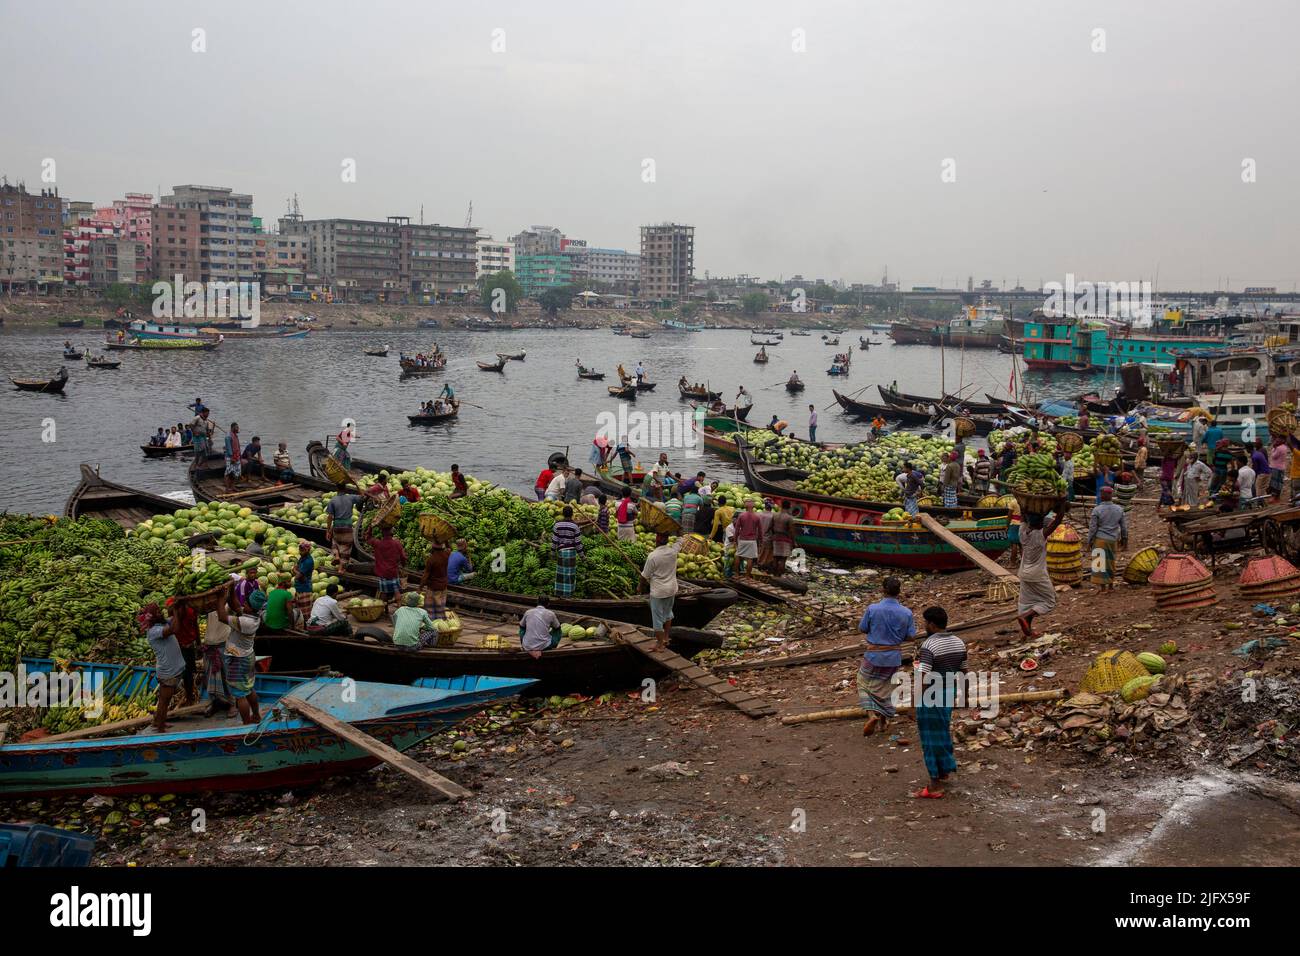 Les travailleurs sont occupés à décharger les fruits saisonniers des bateaux à Wiseghat, dans le vieux Dhaka. Bangladesh Banque D'Images